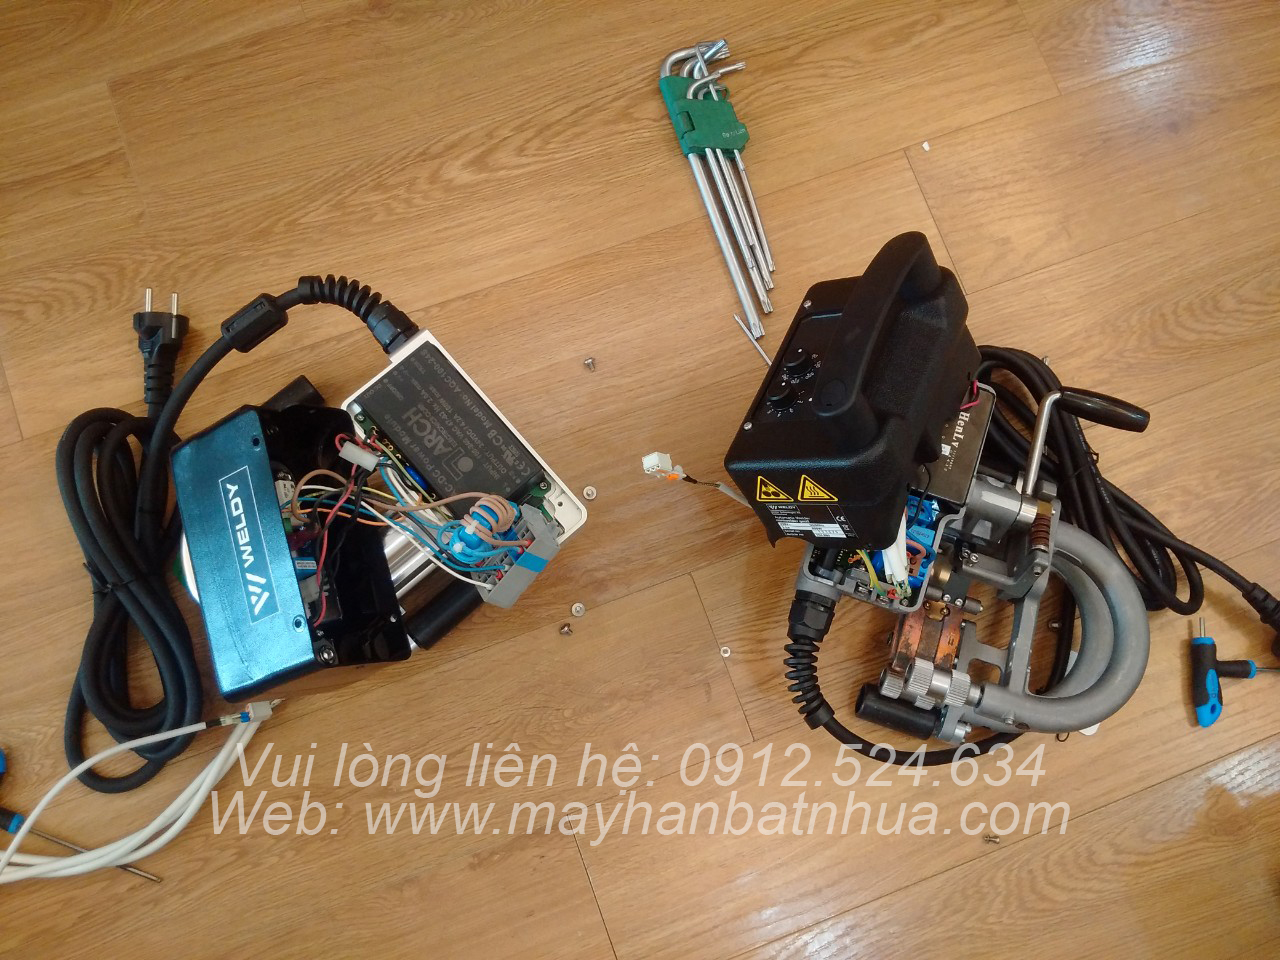 Sửa chữa bảo dưỡng máy hàn bạt HDPE ao tôm - model Weldy GEO2 Mini